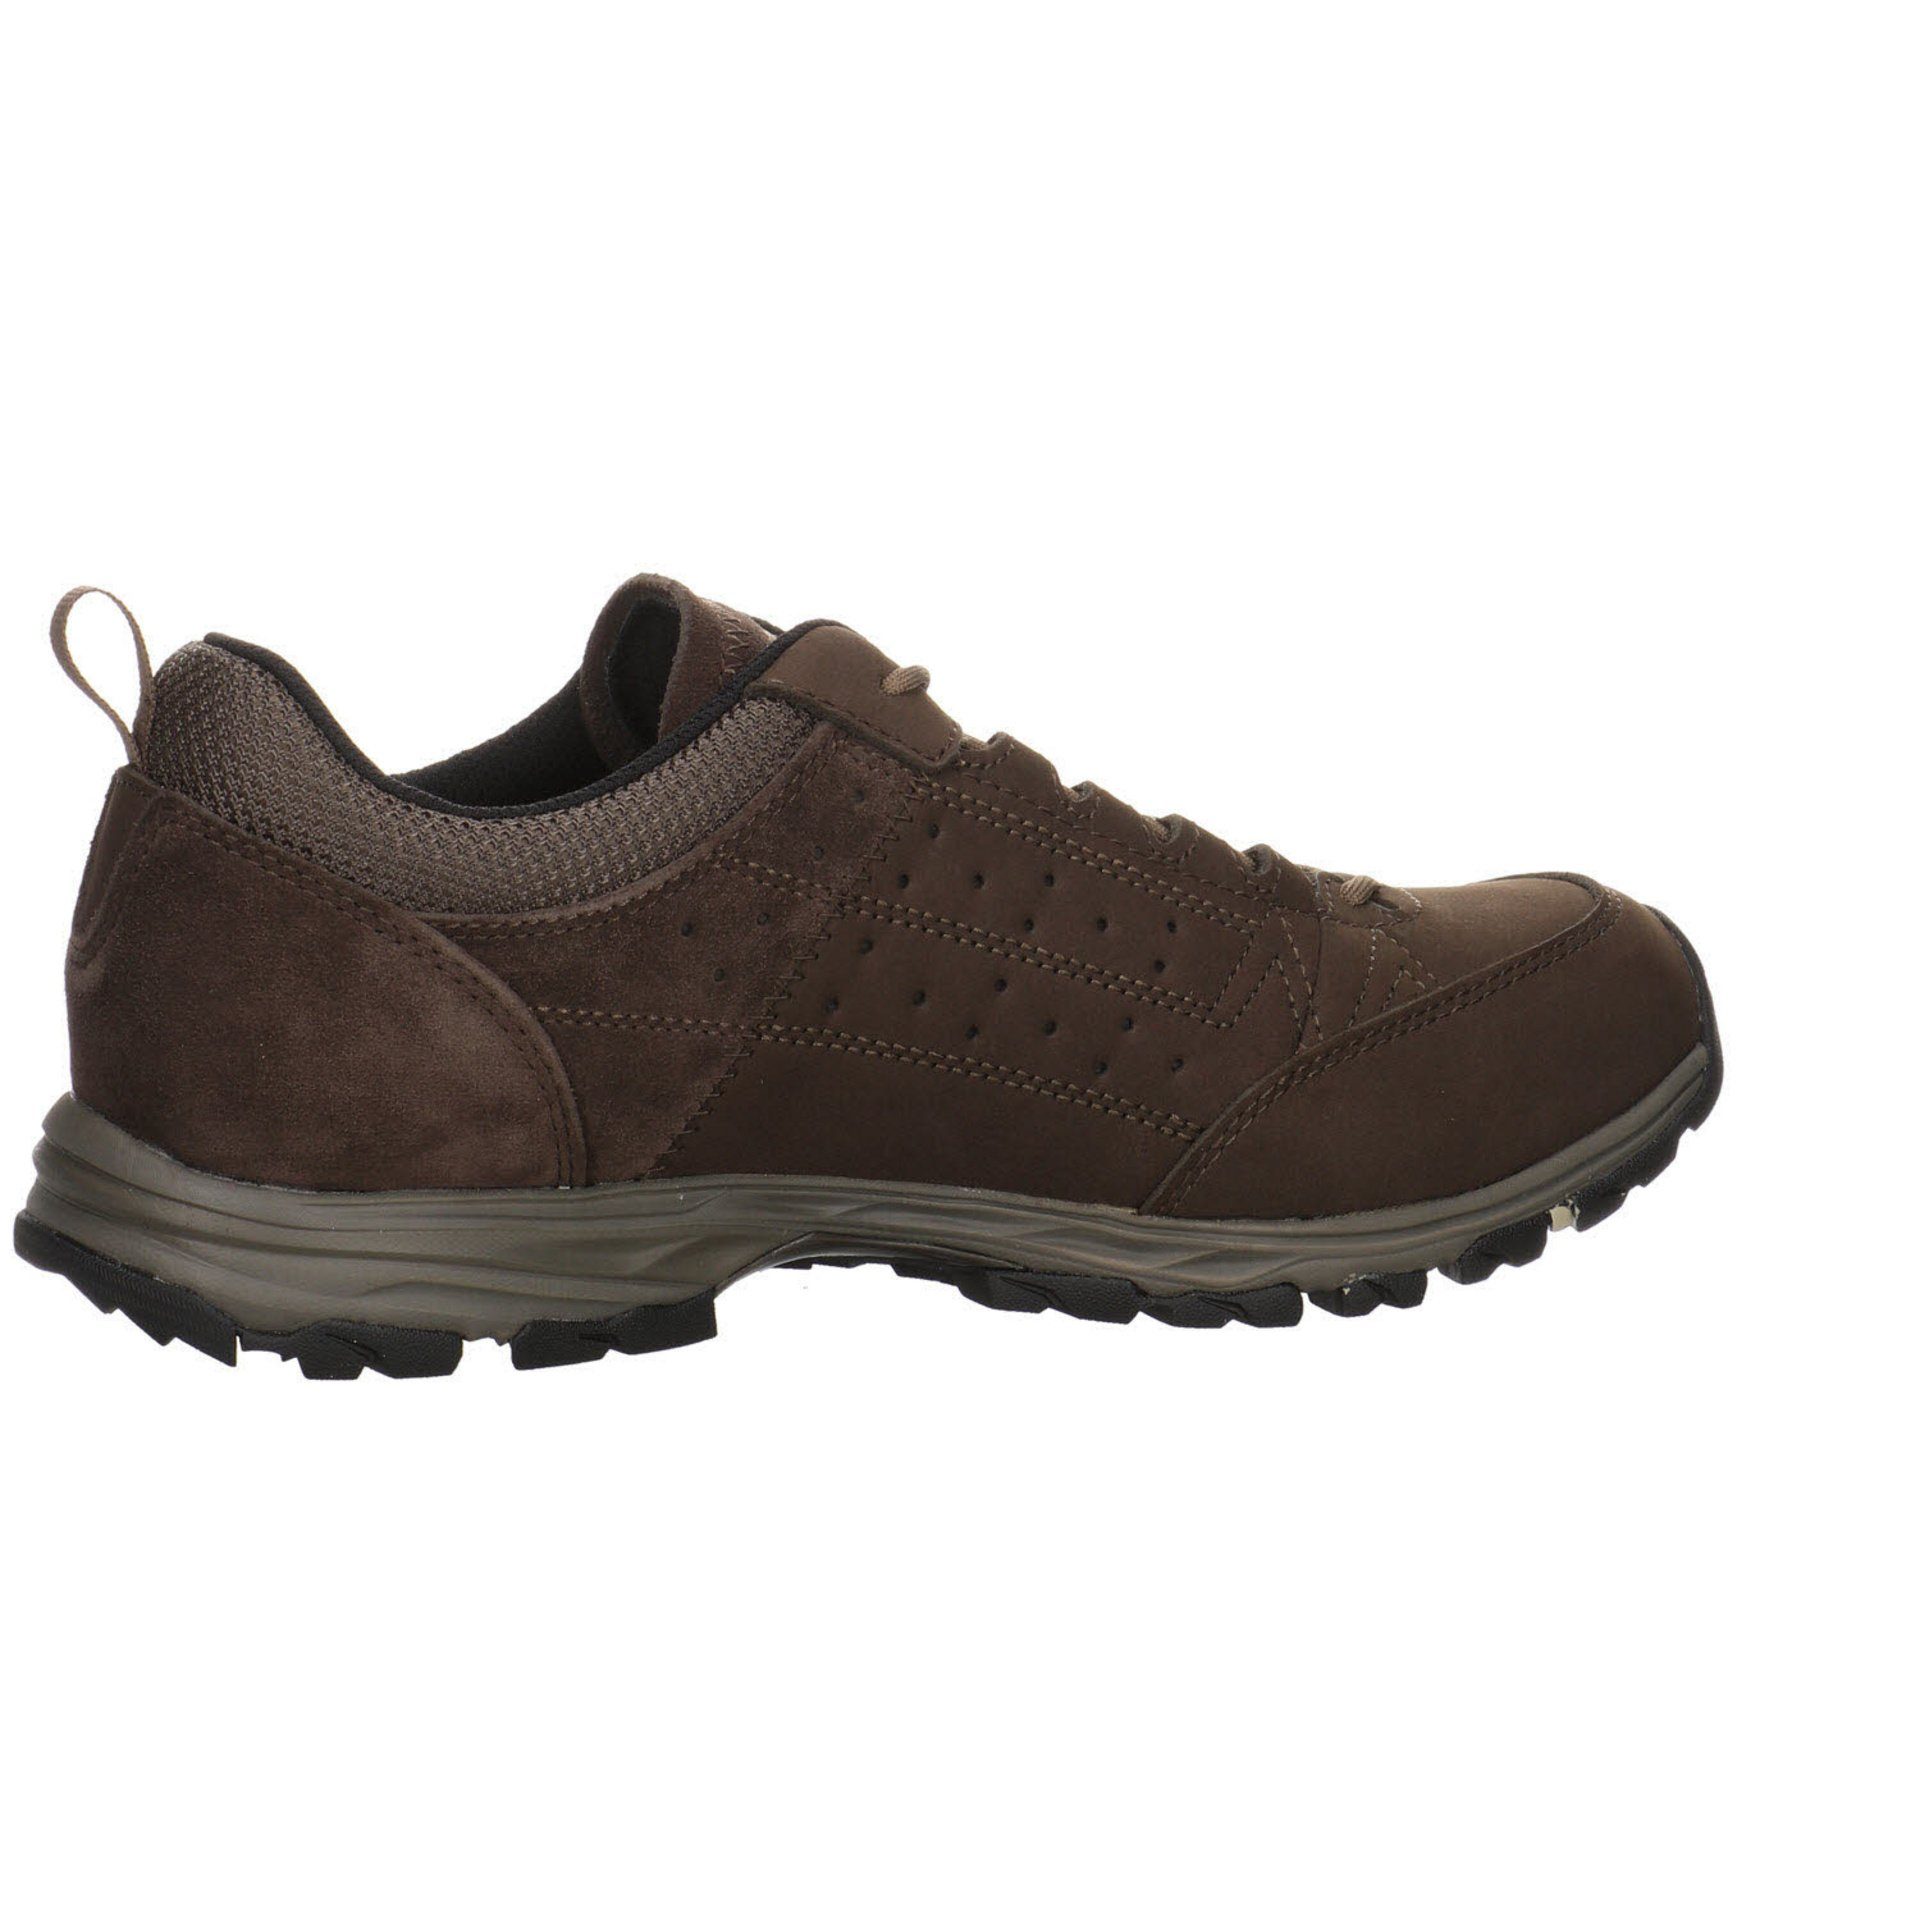 Outdoor Outdoorschuh Leder-/Textilkombination Durban Outdoorschuh Herren dunkelbraun Meindl Schuhe GTX